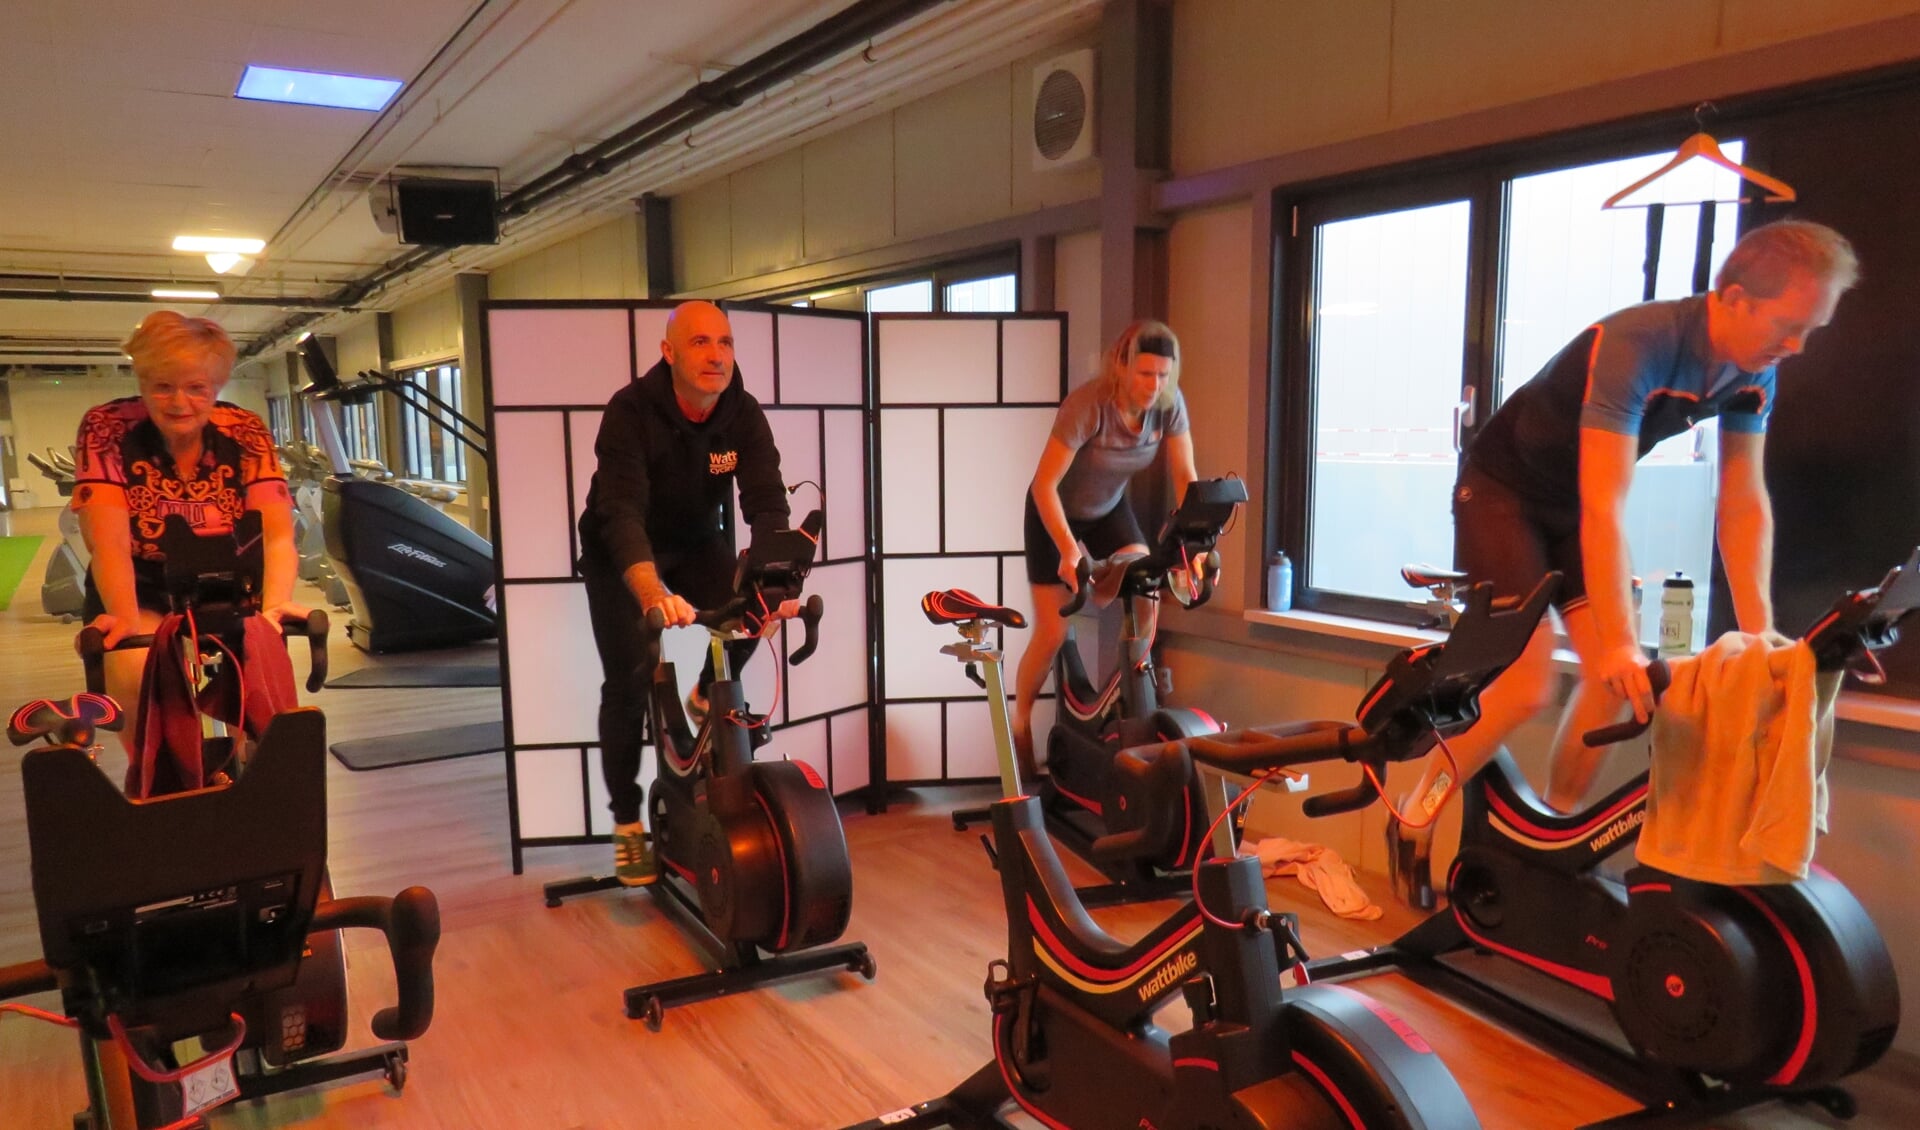 Lekker trainen naar eigen vermogen op de Wattbikes bij WattCycling Delft